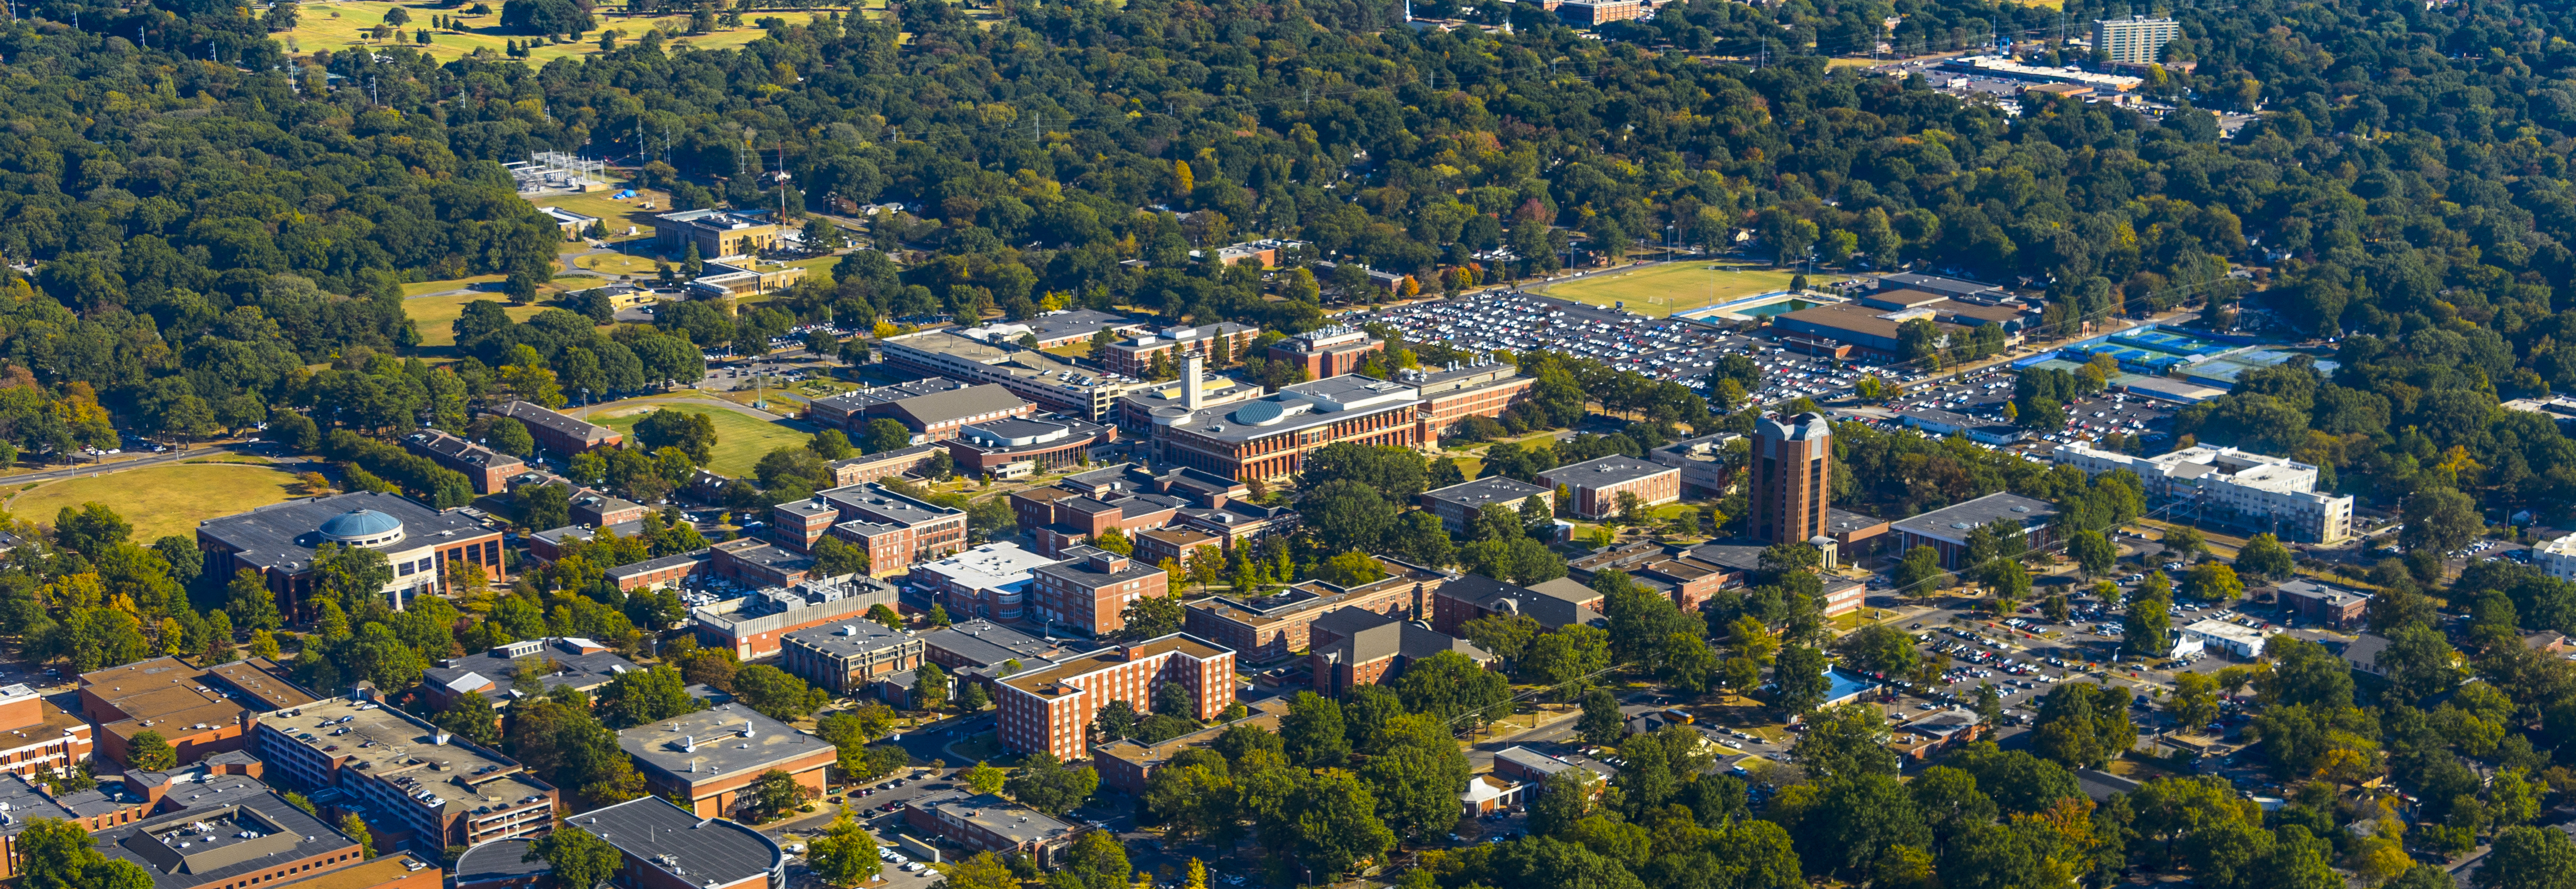 campus aerial view